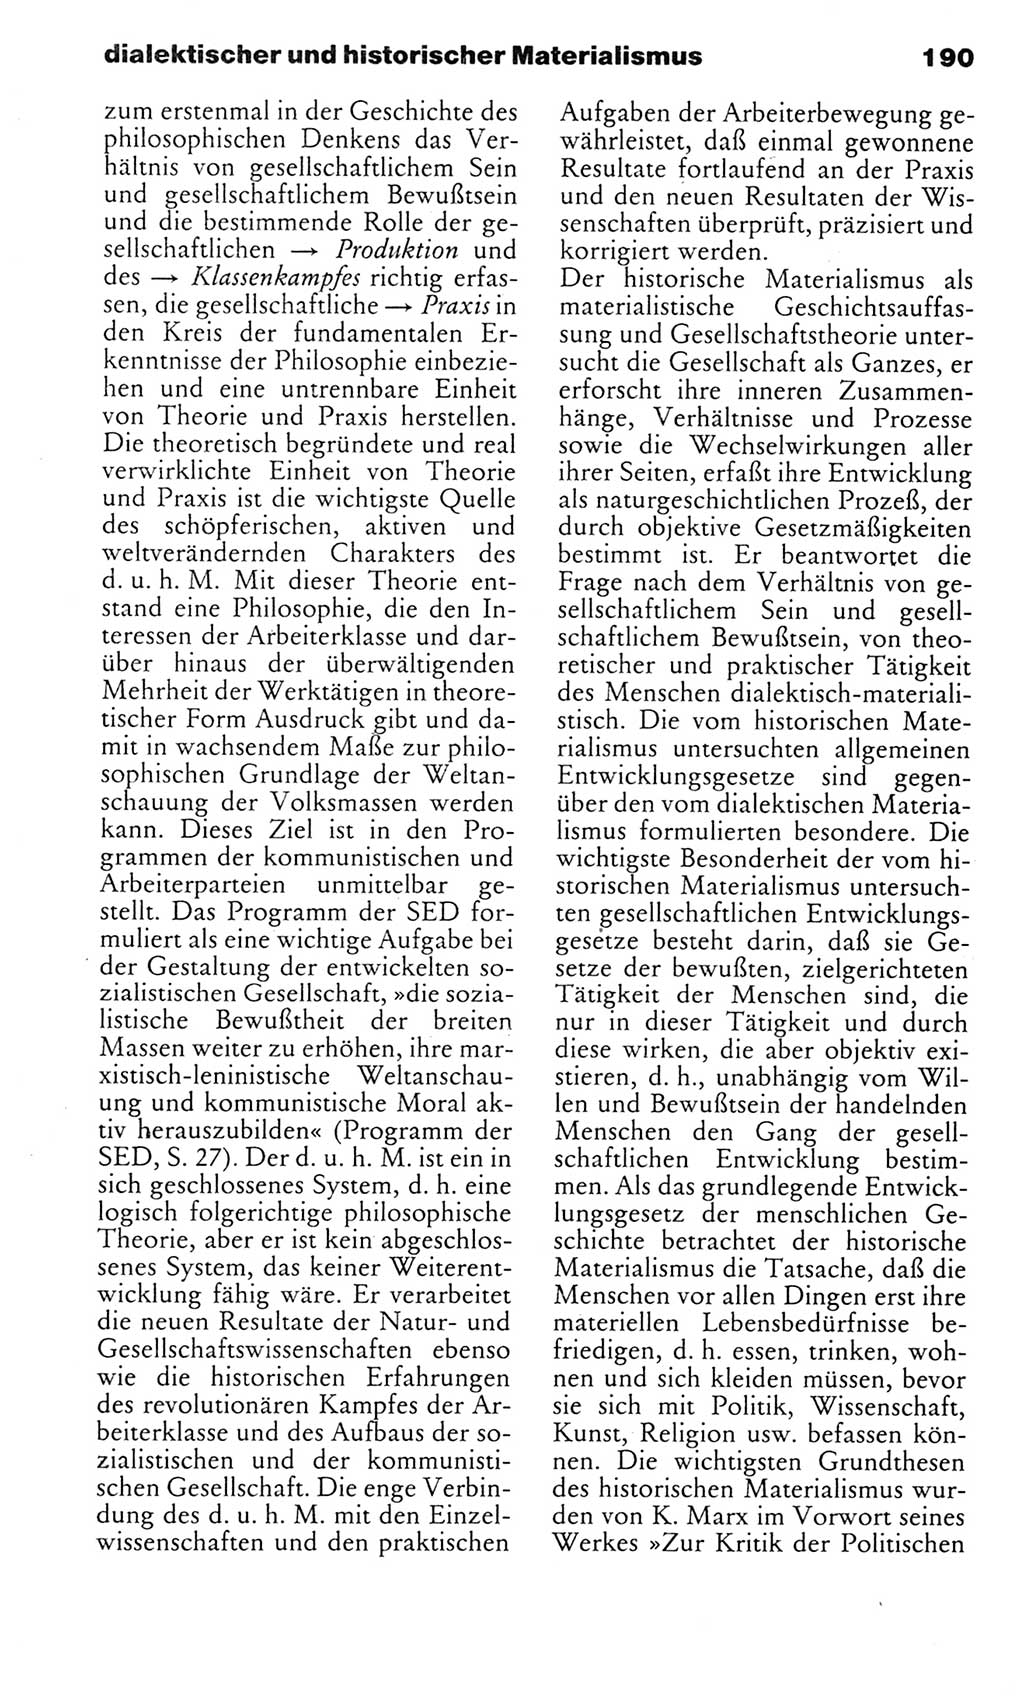 Kleines politisches Wörterbuch [Deutsche Demokratische Republik (DDR)] 1983, Seite 190 (Kl. pol. Wb. DDR 1983, S. 190)